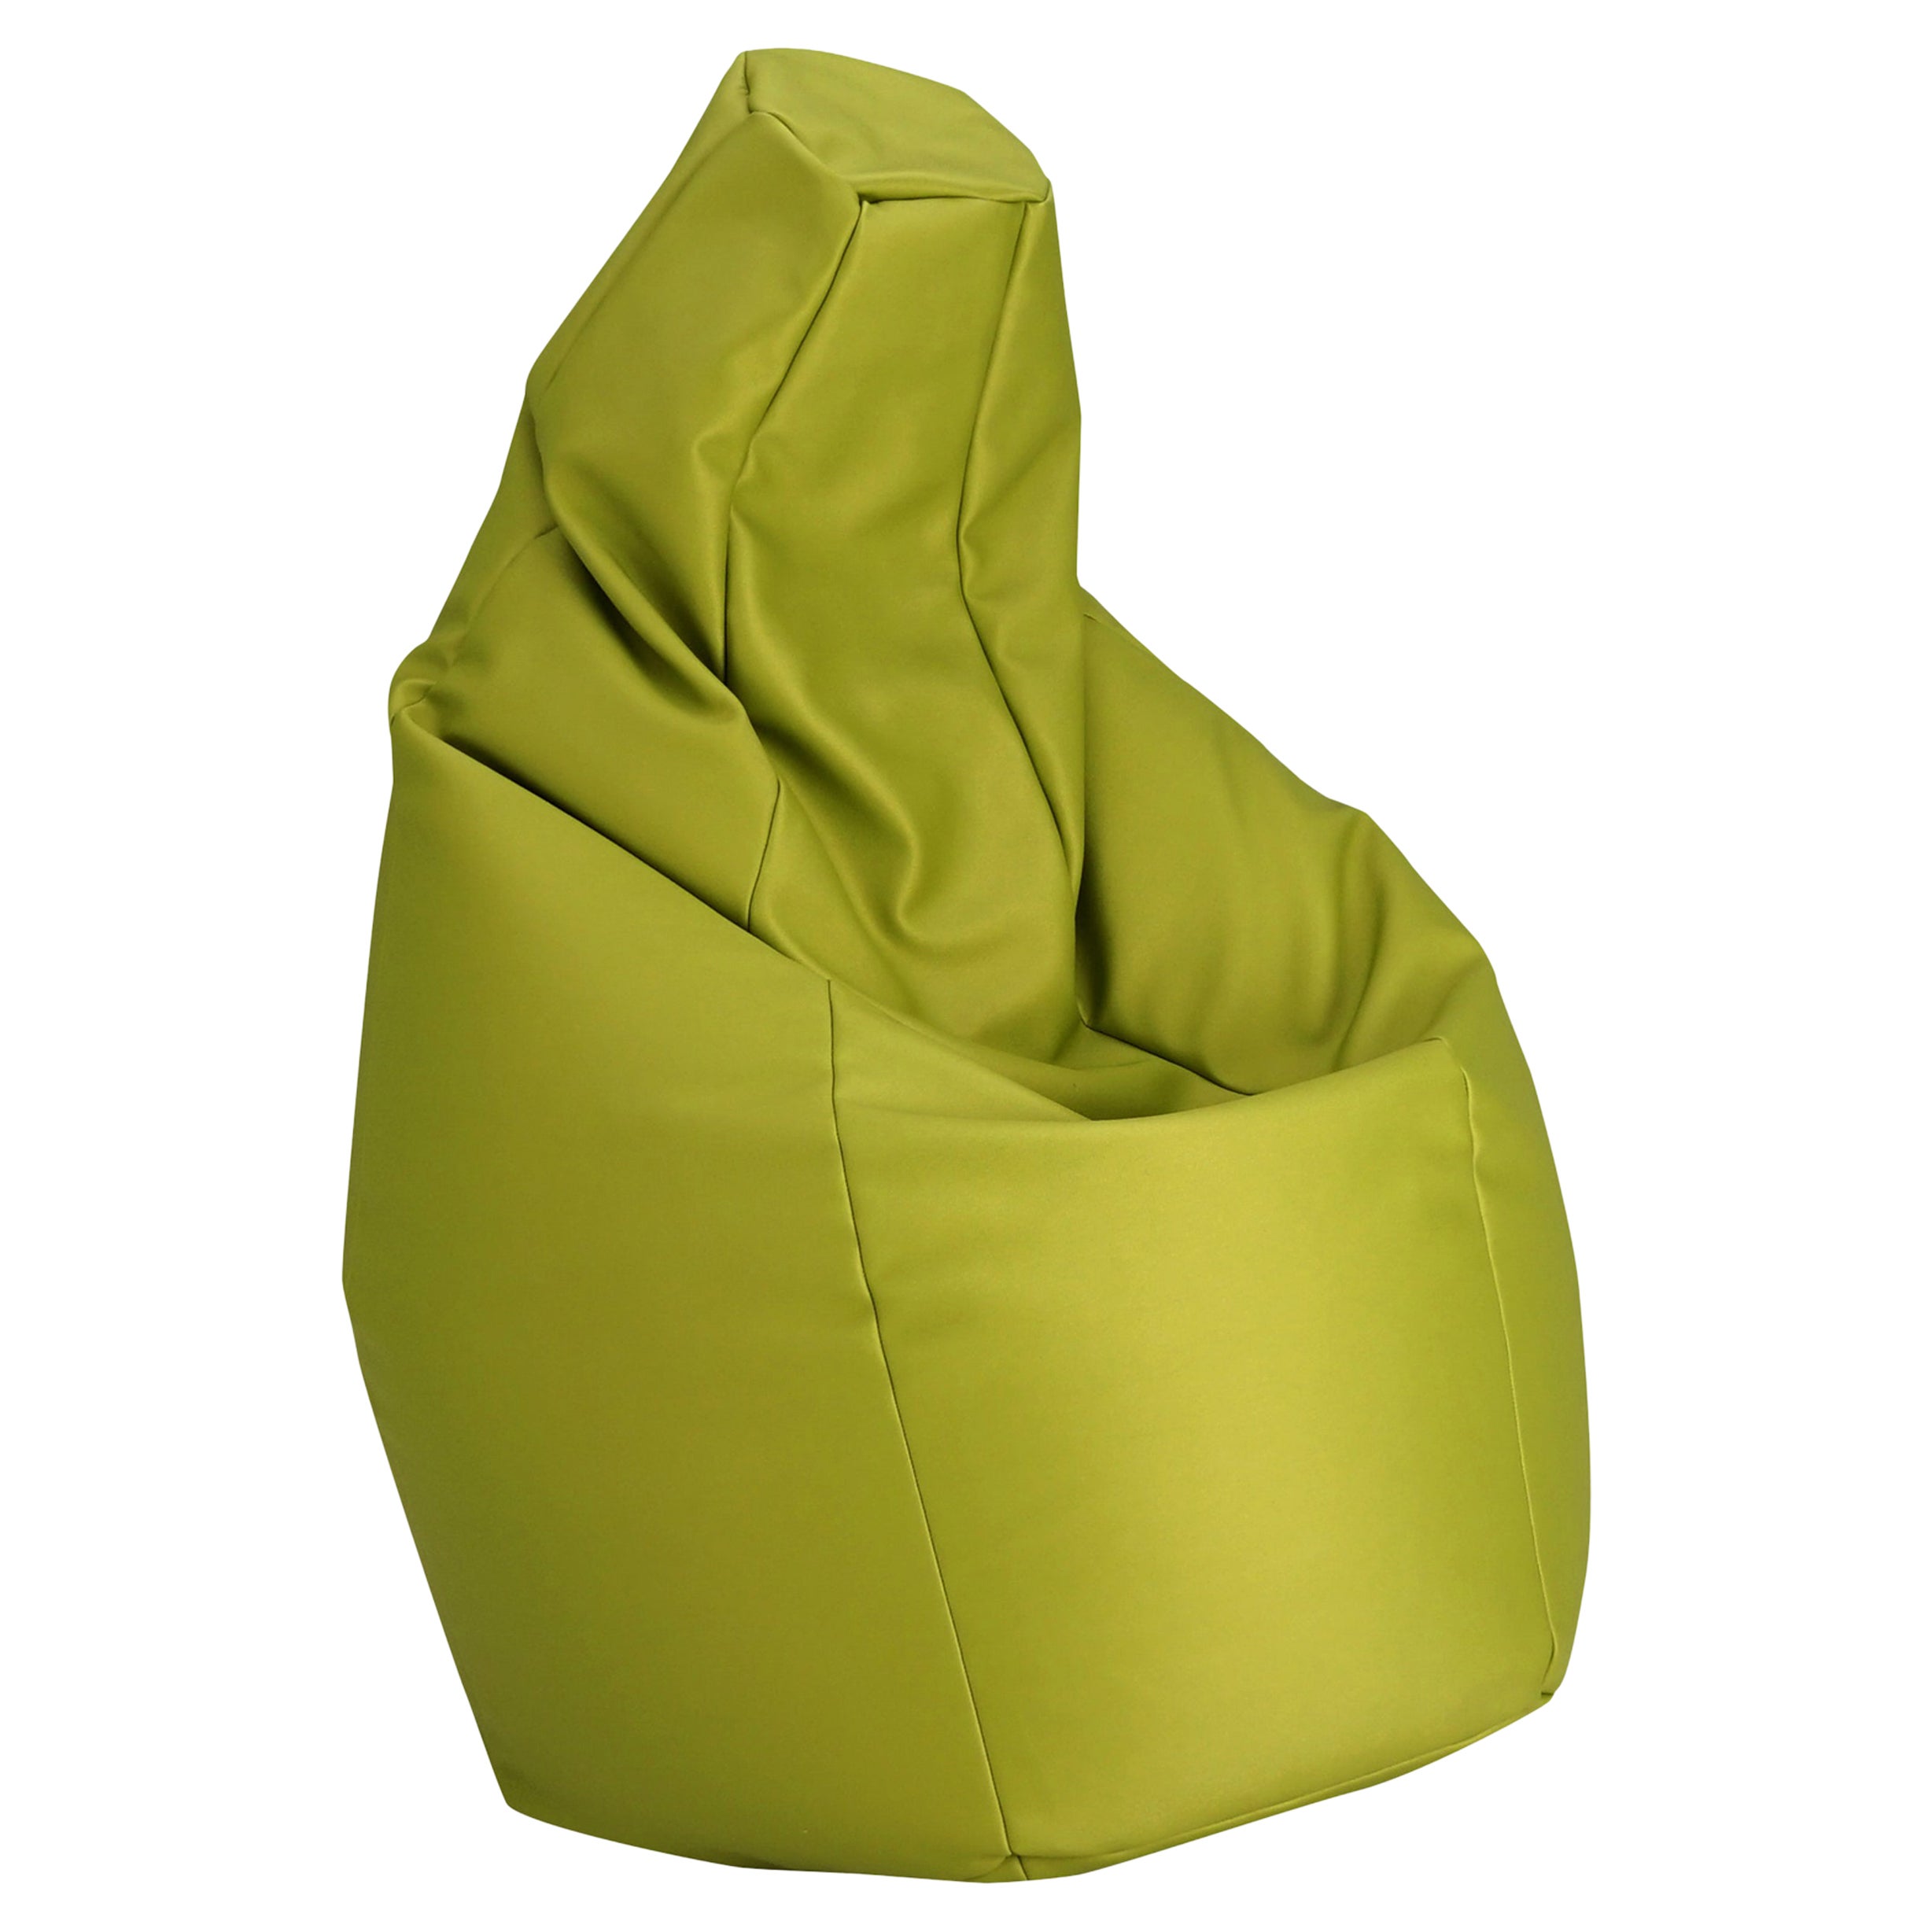 Zanotta Medium Sacco in Green Vip Fabric by Gatti, Paolini, Teodoro